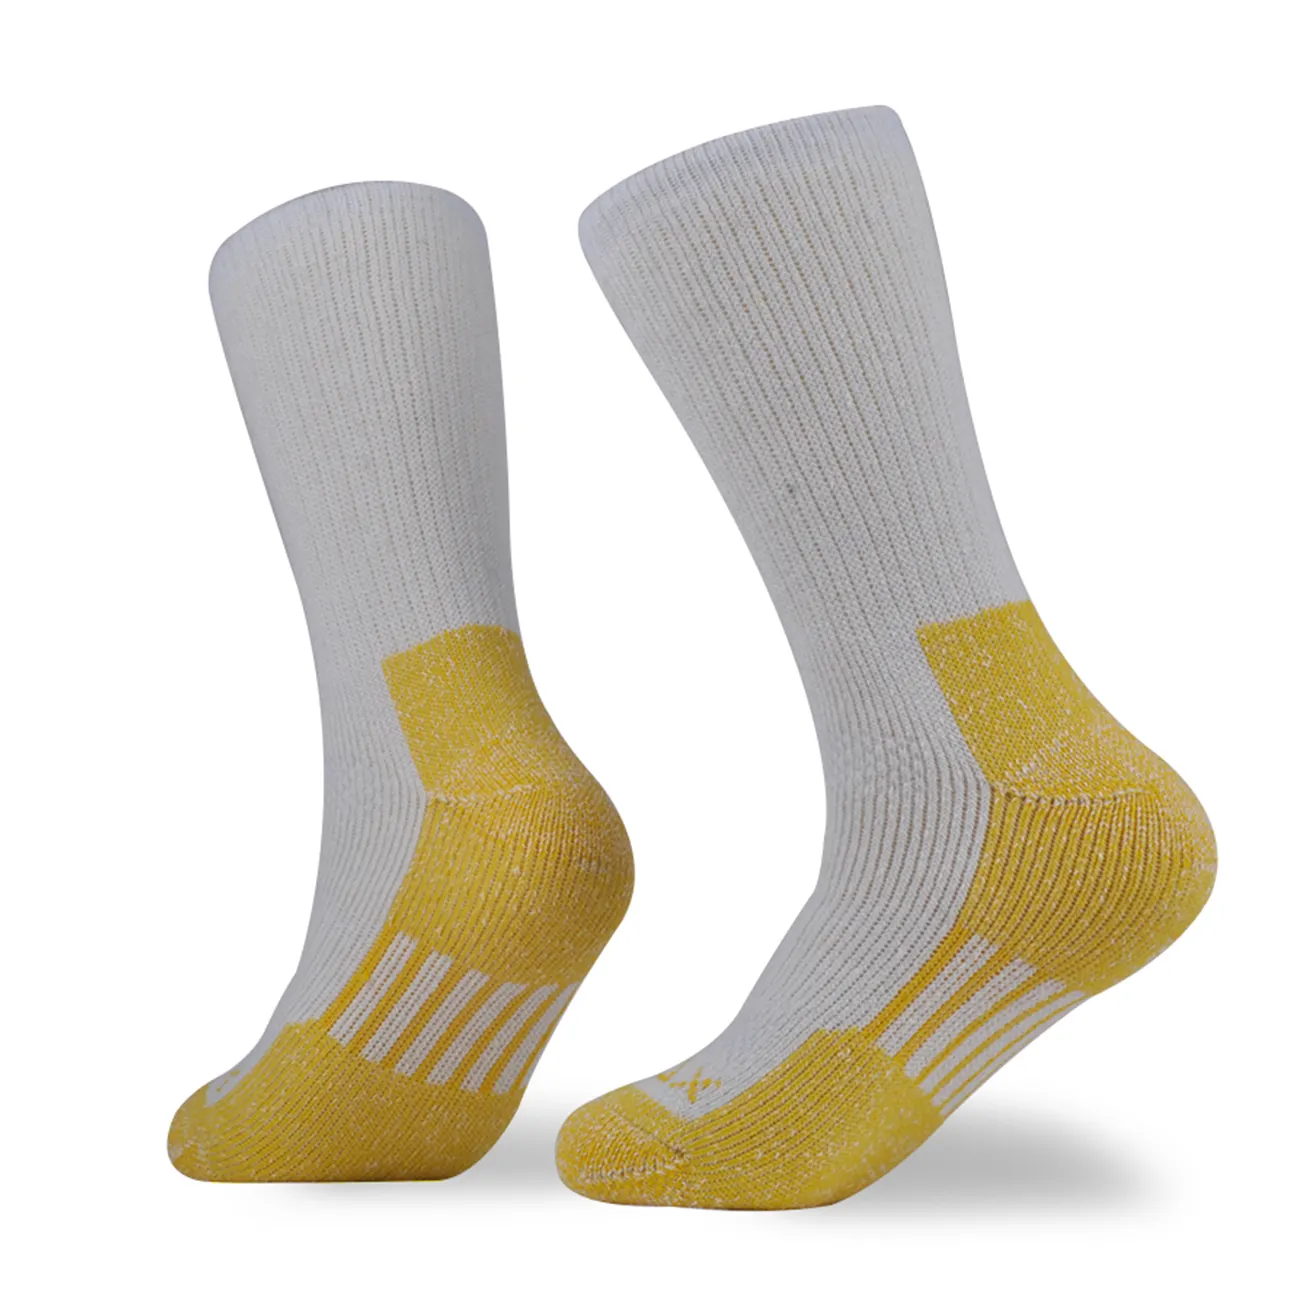 Winter socks for men